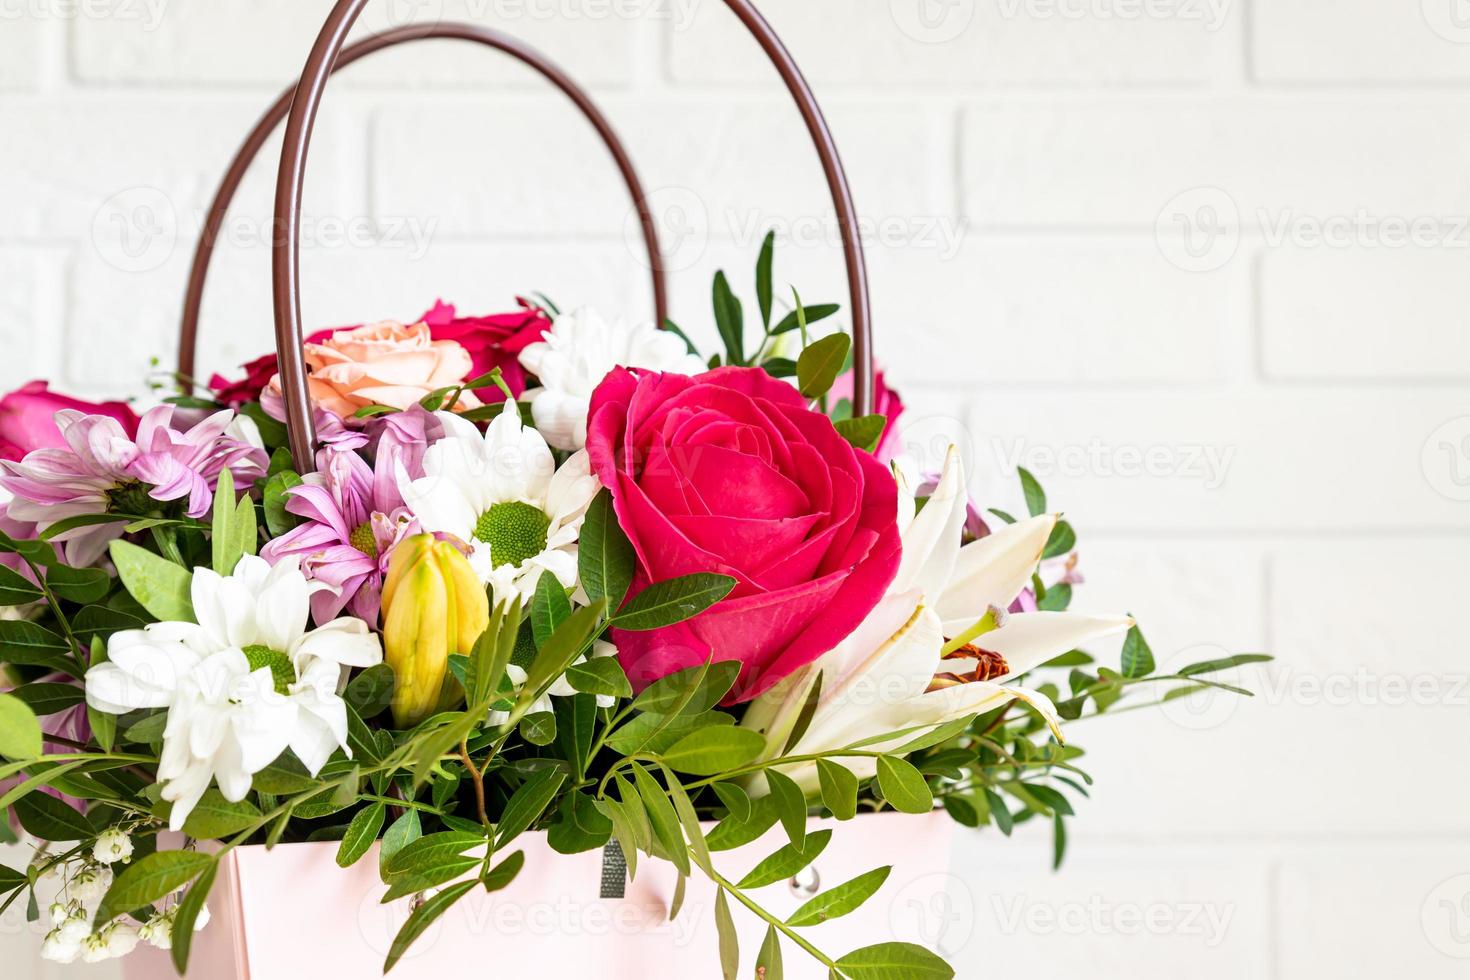 caixa rosa com buquê de flores em uma mesa. maravilhosa composição de flores violetas, vermelhas e brancas com vegetação é um presente perfeito para aniversário ou casamento foto